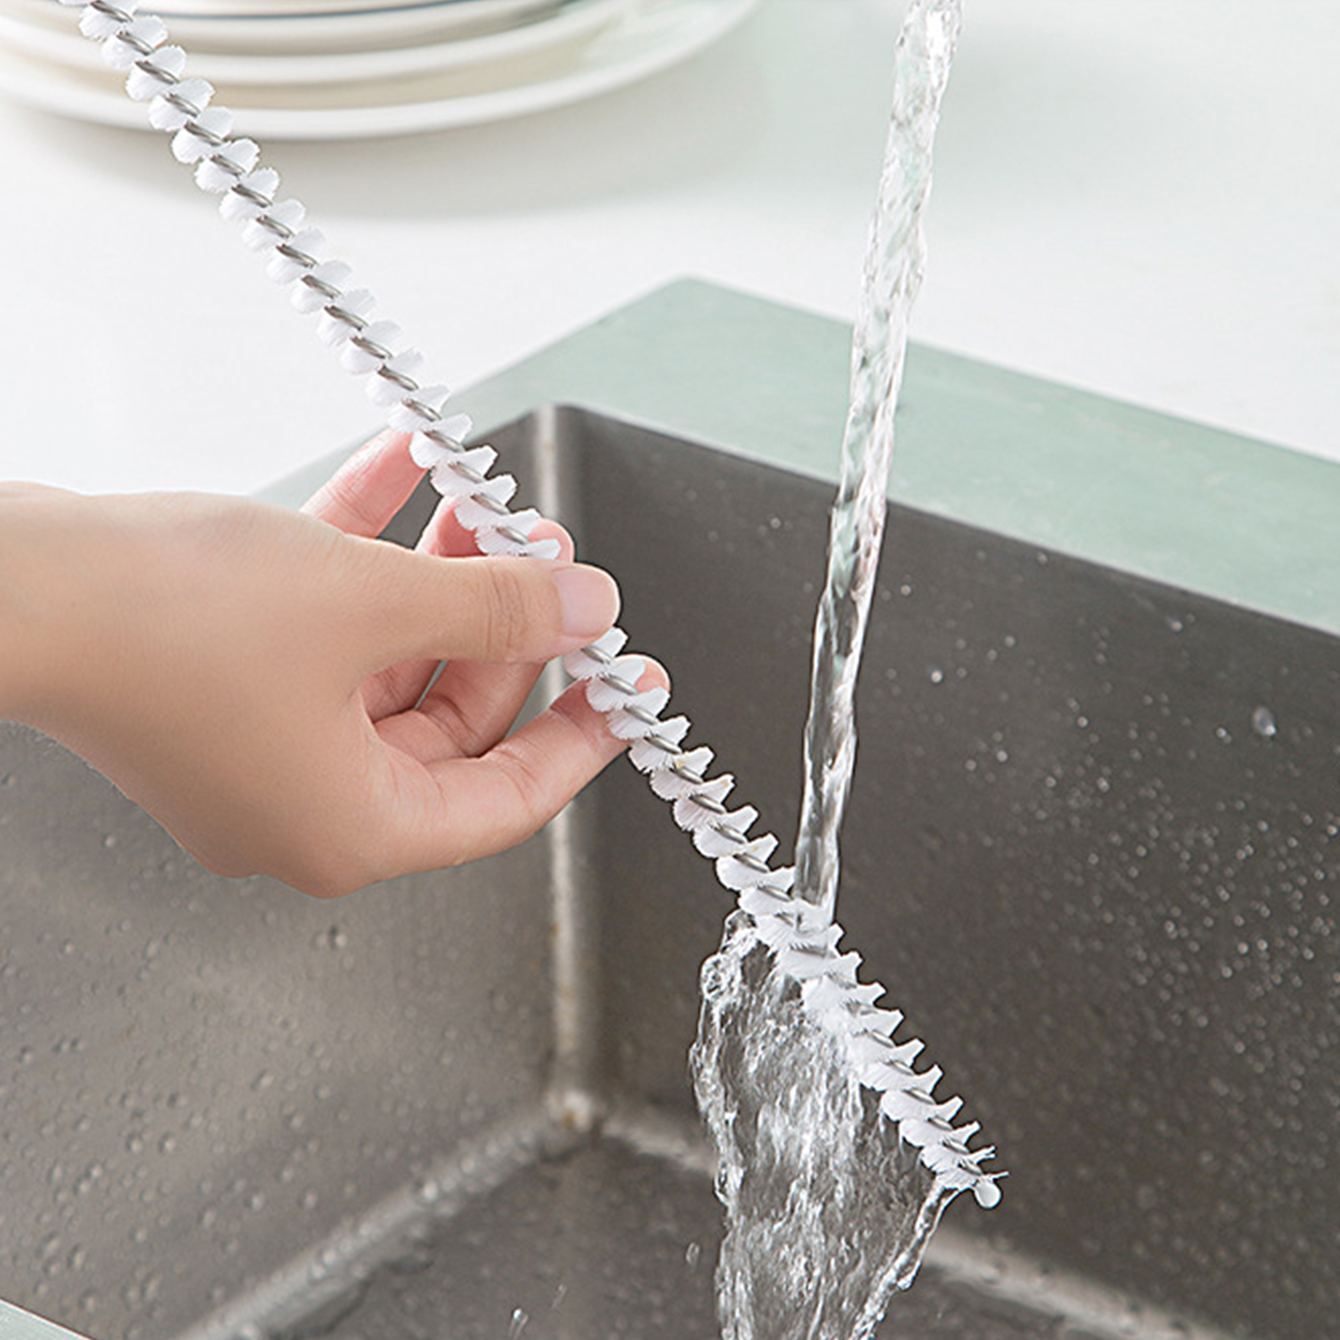 Drain Cleaner Brush - Flexible Thin Long Brush For Clog Free Sinks